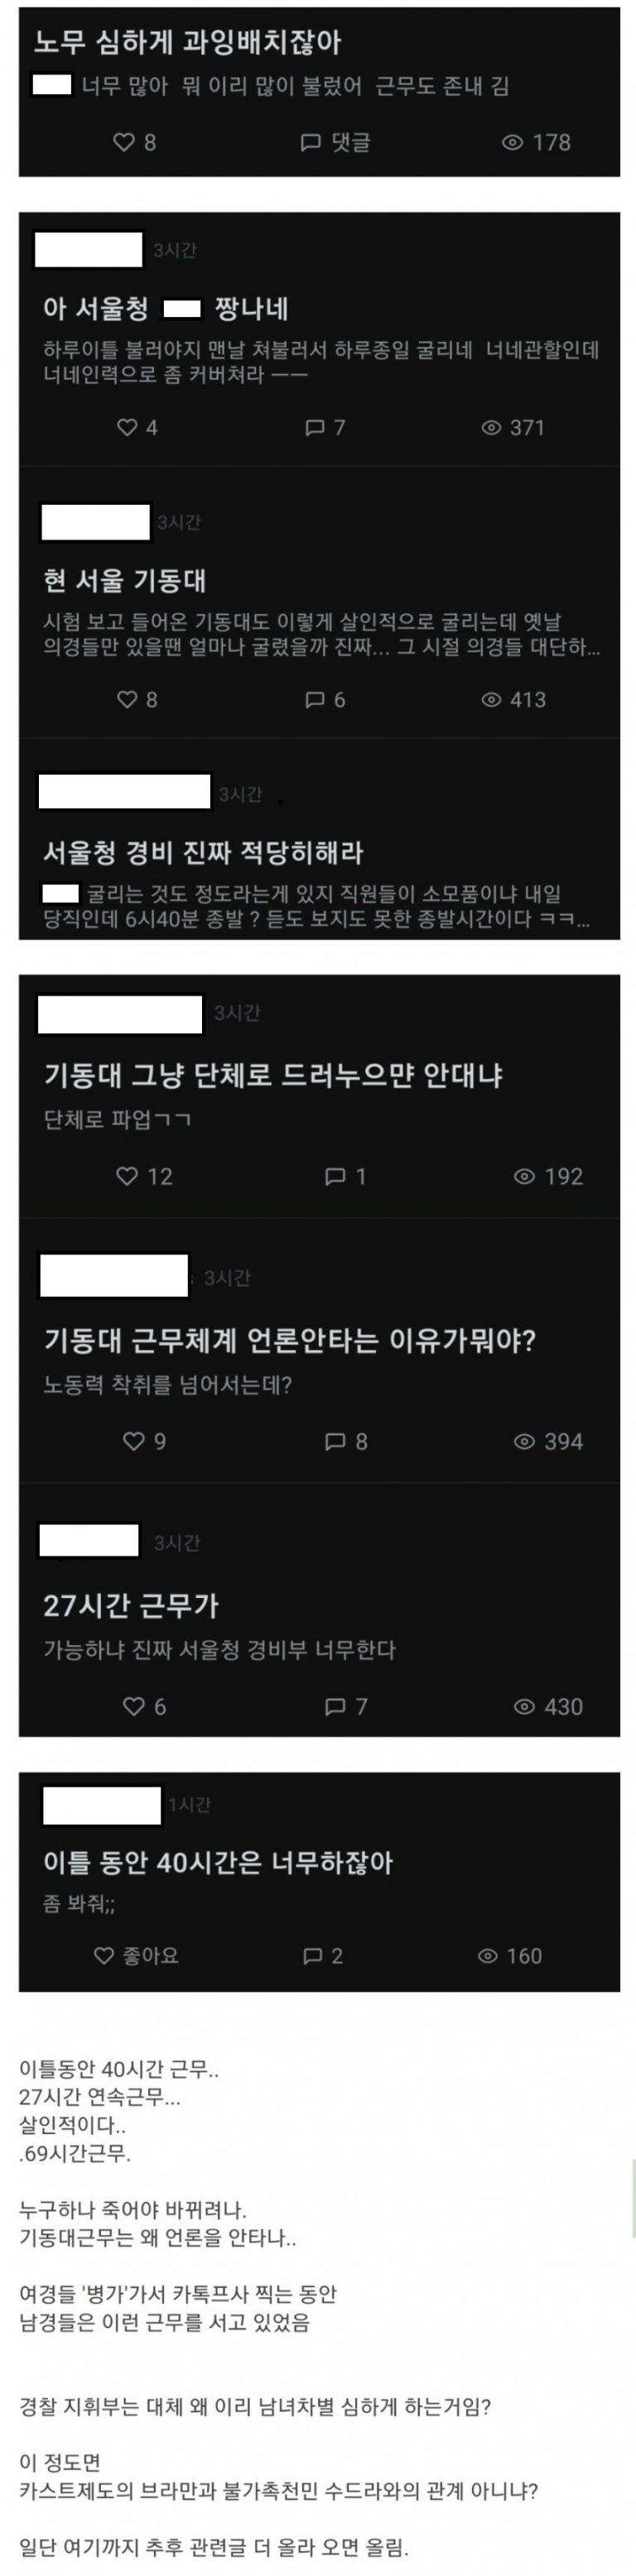 실시간 블라인드 불태운 서울청'여경 갑질' 사건의 전말 (총정리)